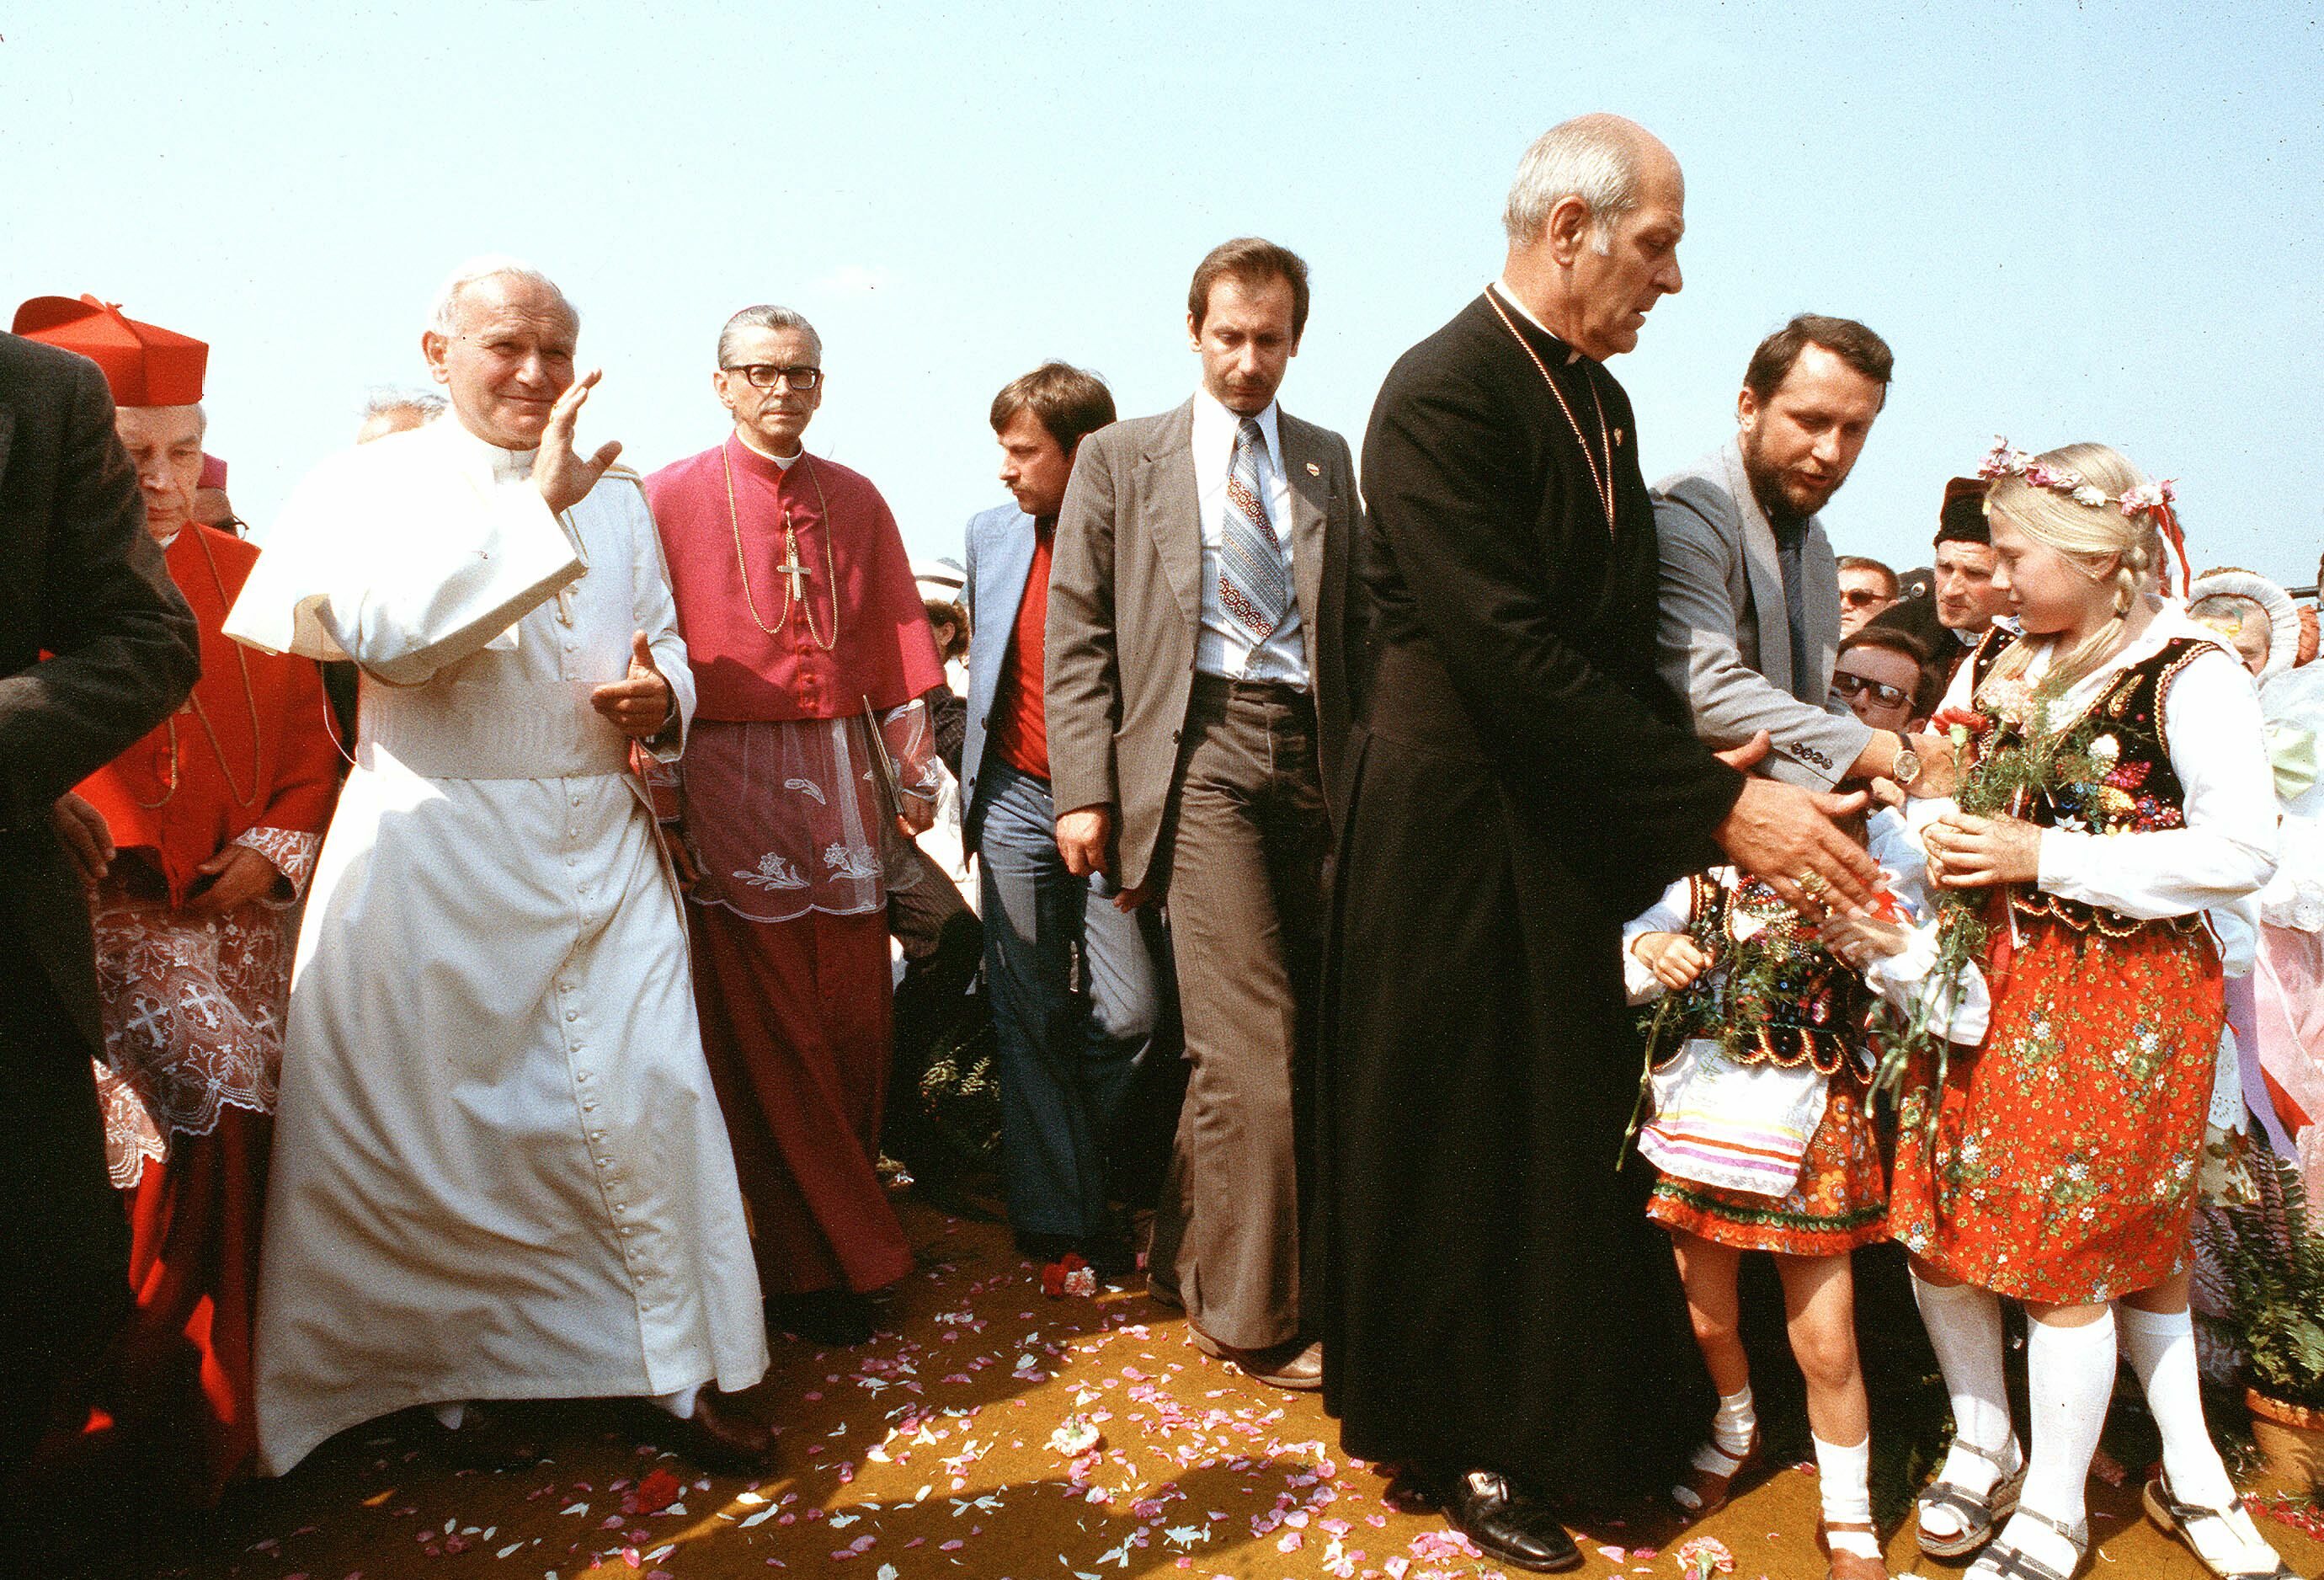 Jean-Paul II en Pologne, le voyage comme acte diplomatique.
Setboun photographe, Sipa.